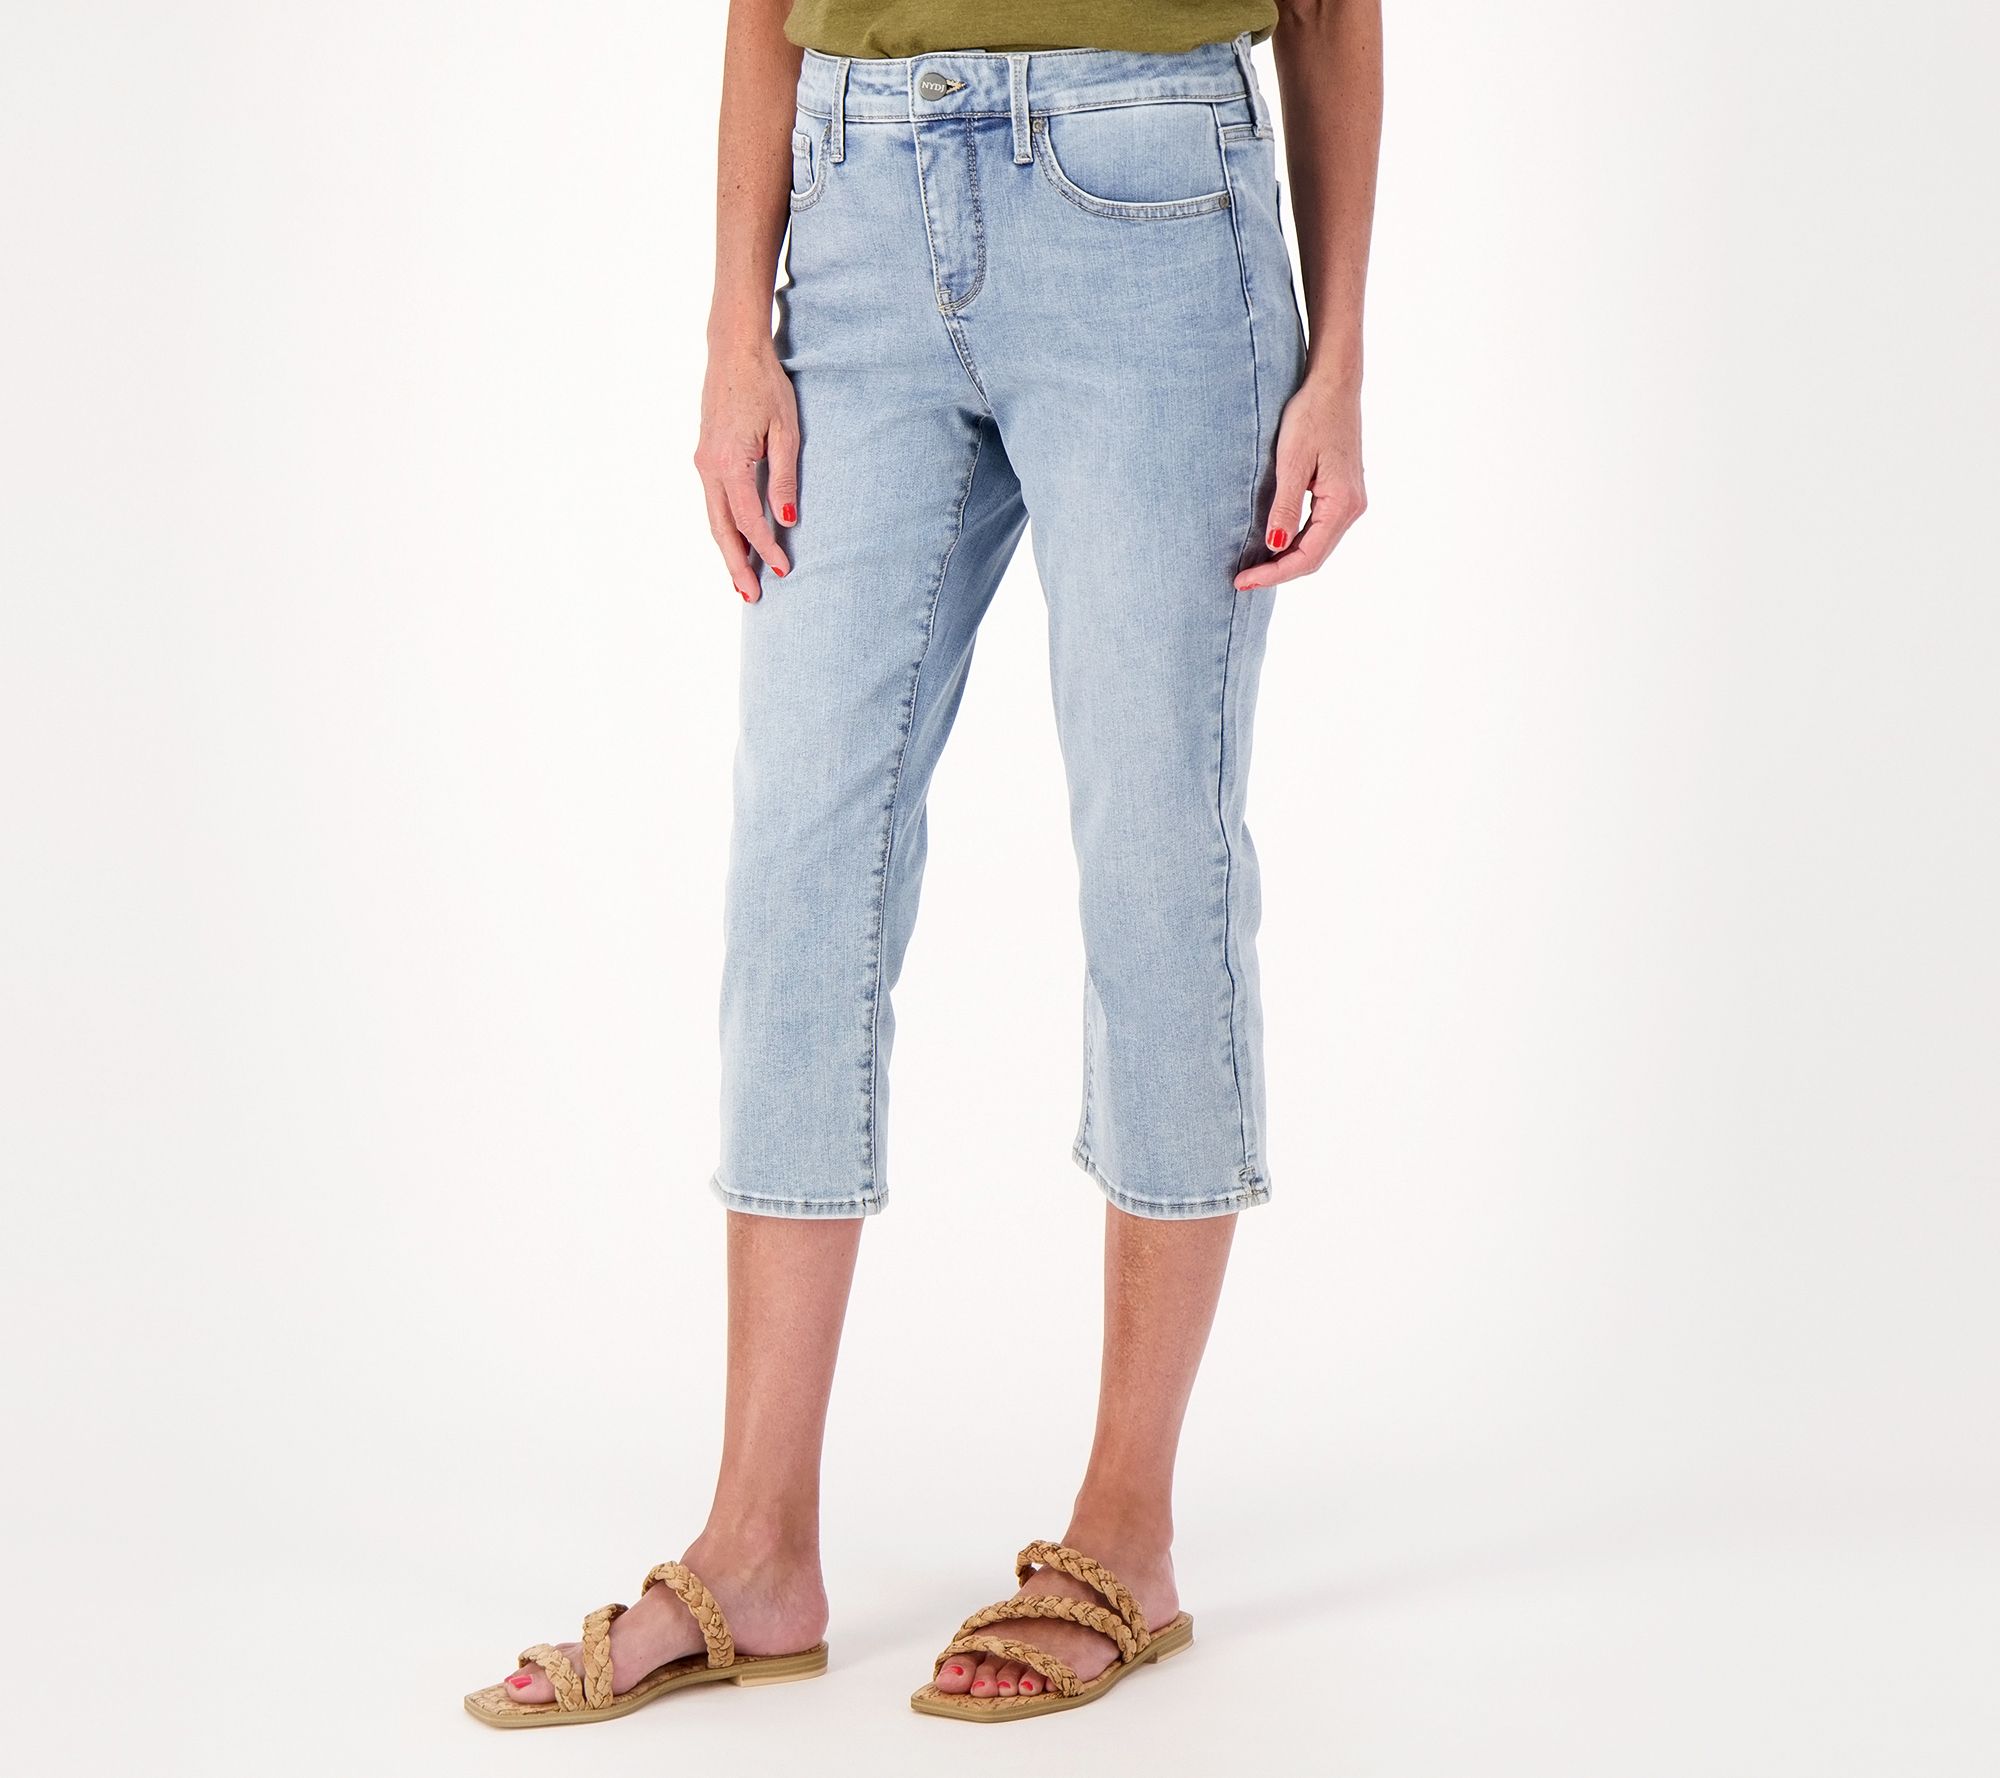 NYDJ Women's Marilyn Straight Jeans in Mesquite, Regular, Size: 00, Denim